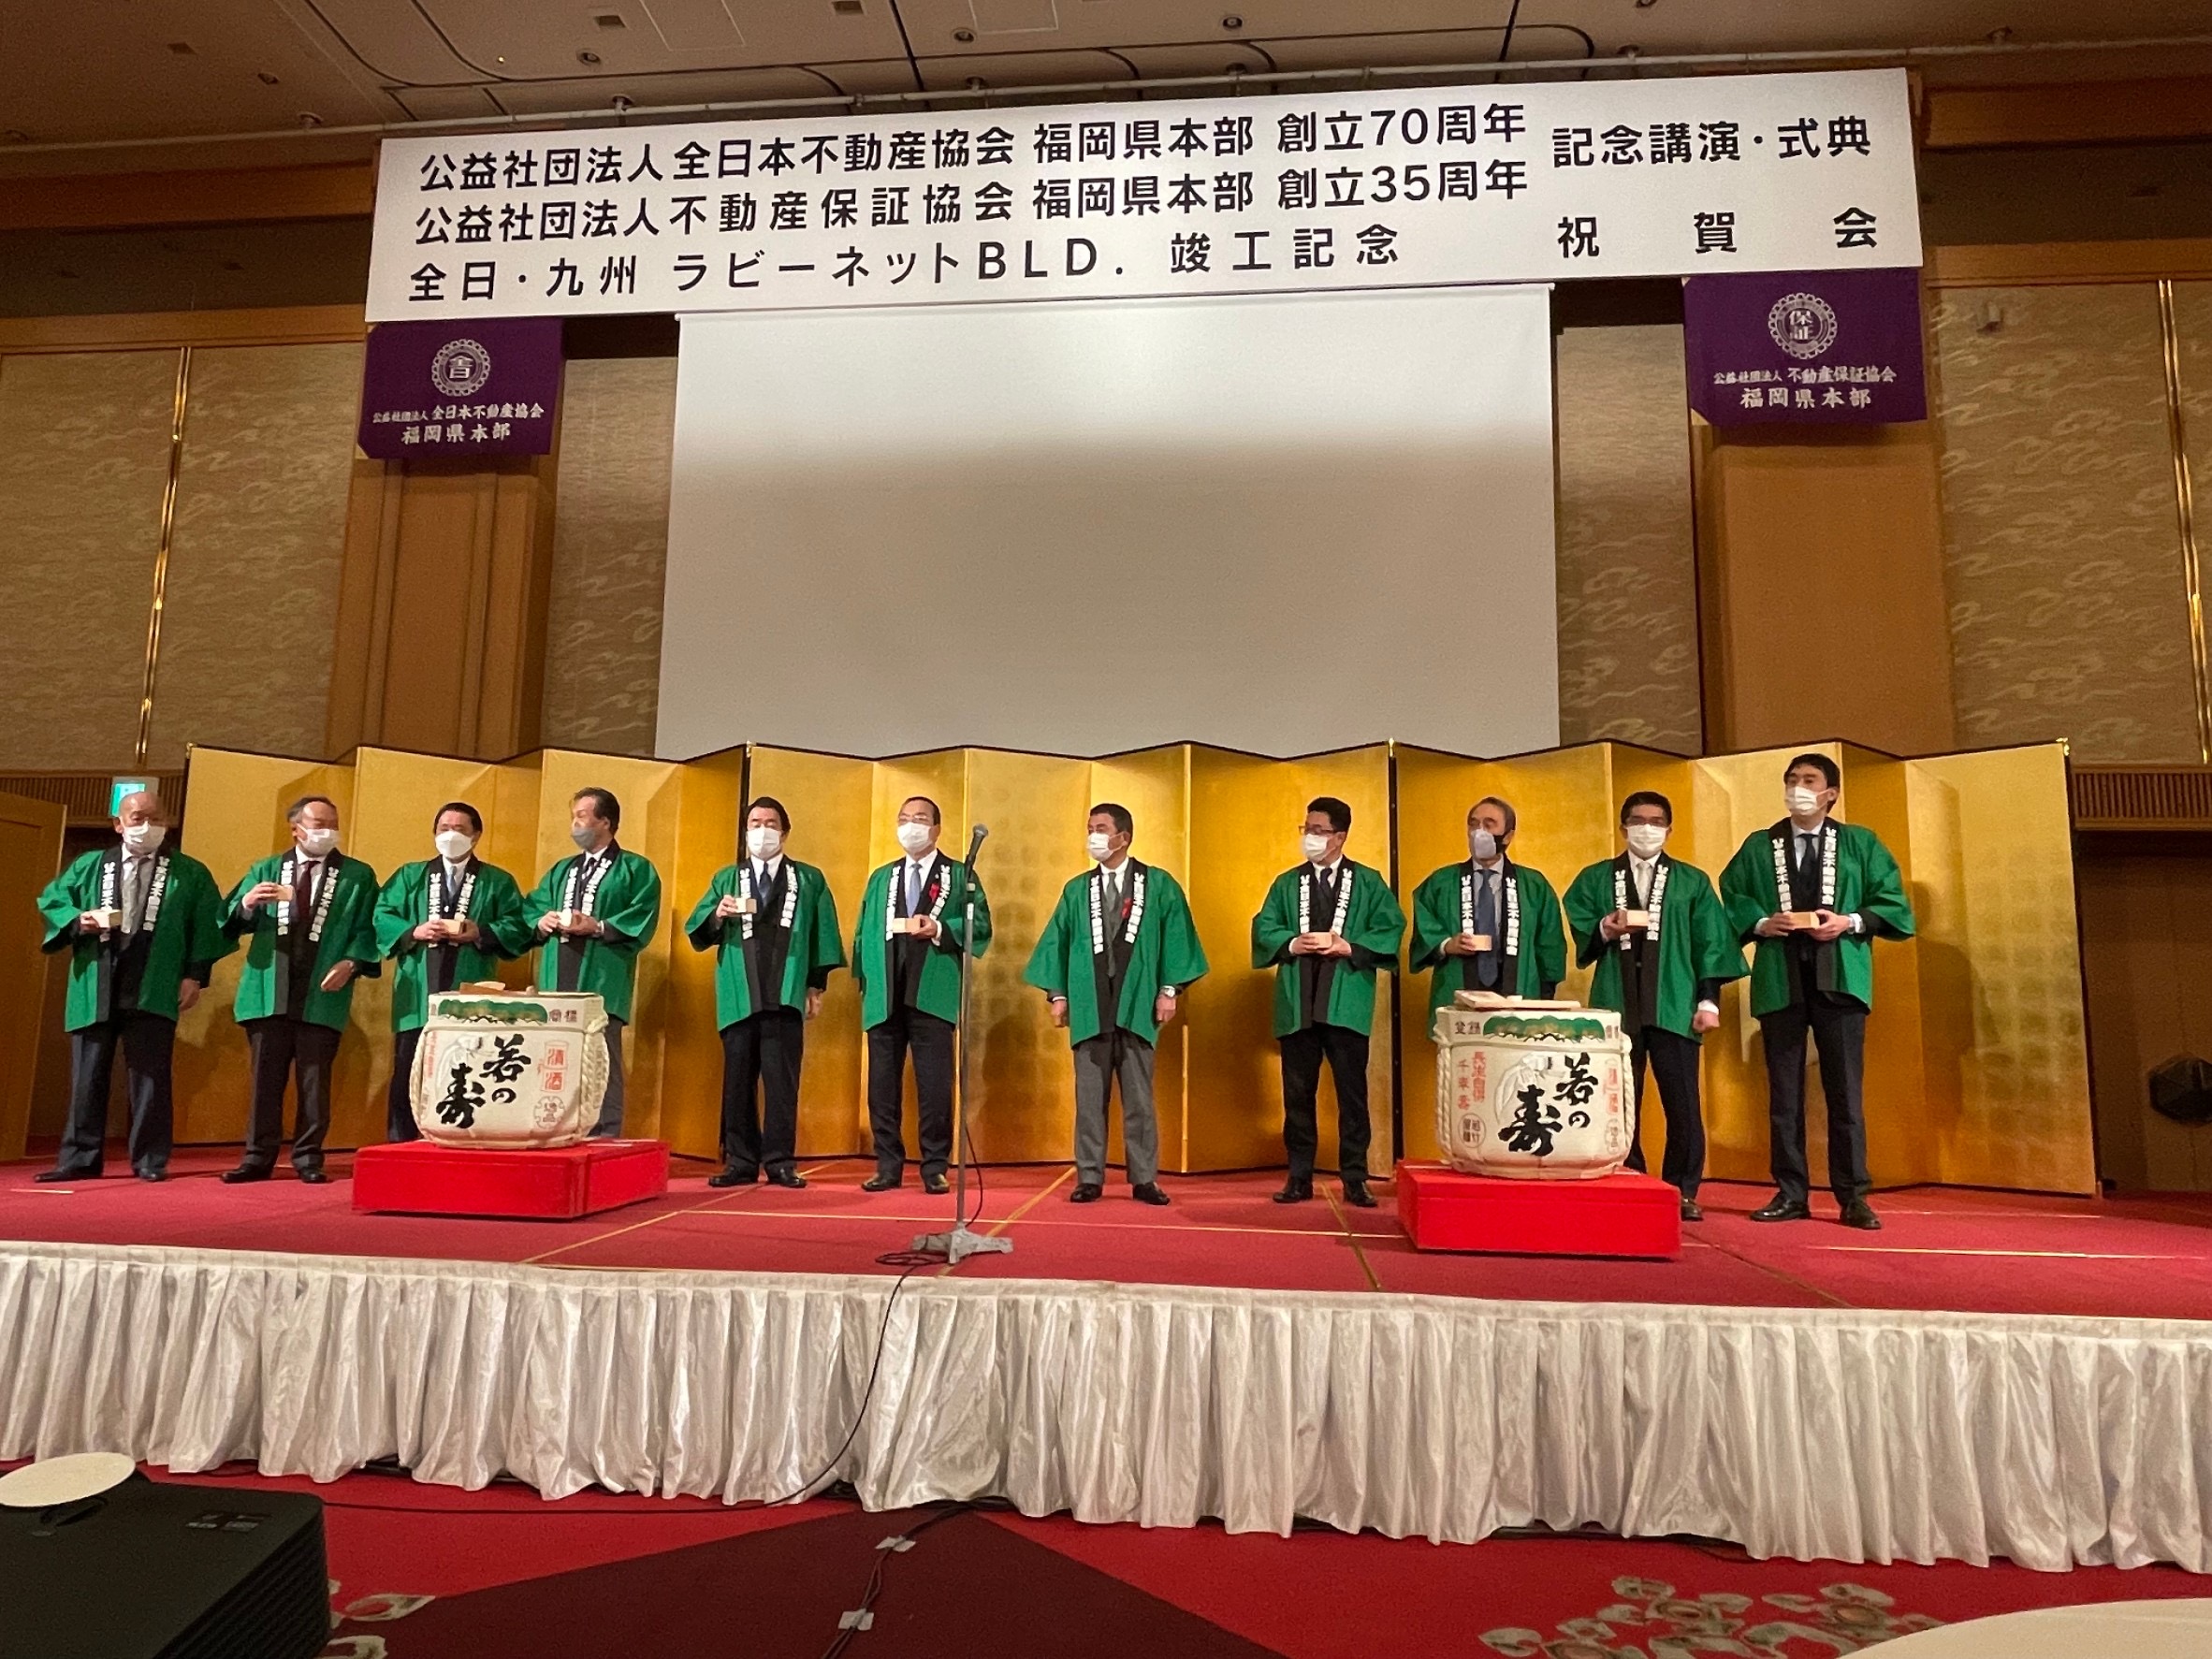 公益社団法人 全日本不動産協会 福岡県本部の創立70周年記念式典